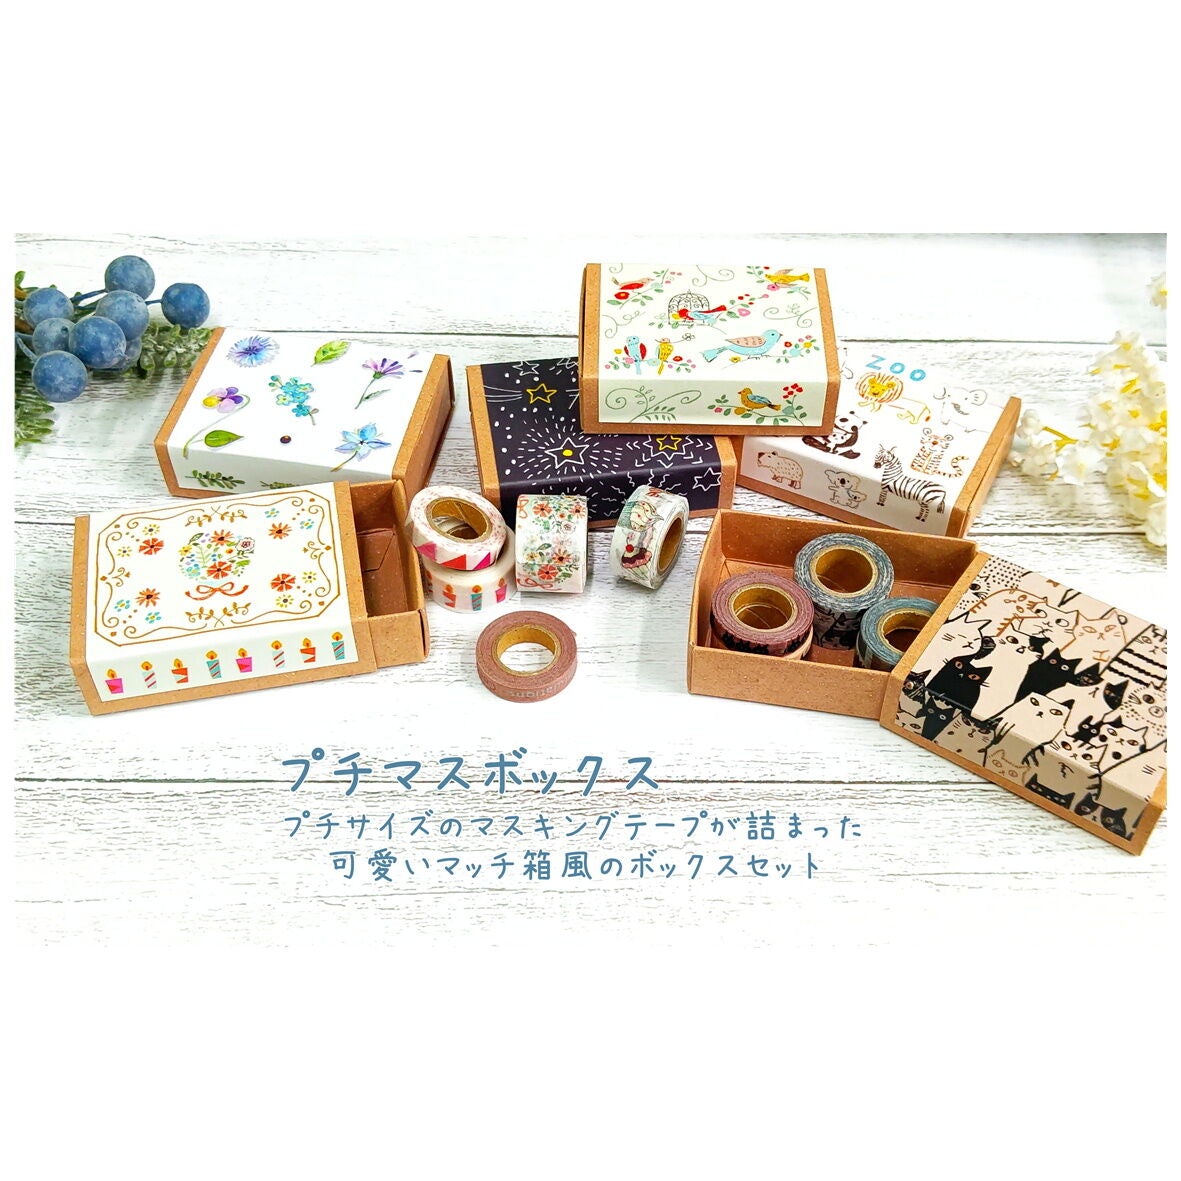 Birds Japanese Washi Tape Masking Tape Sets in Mini Box